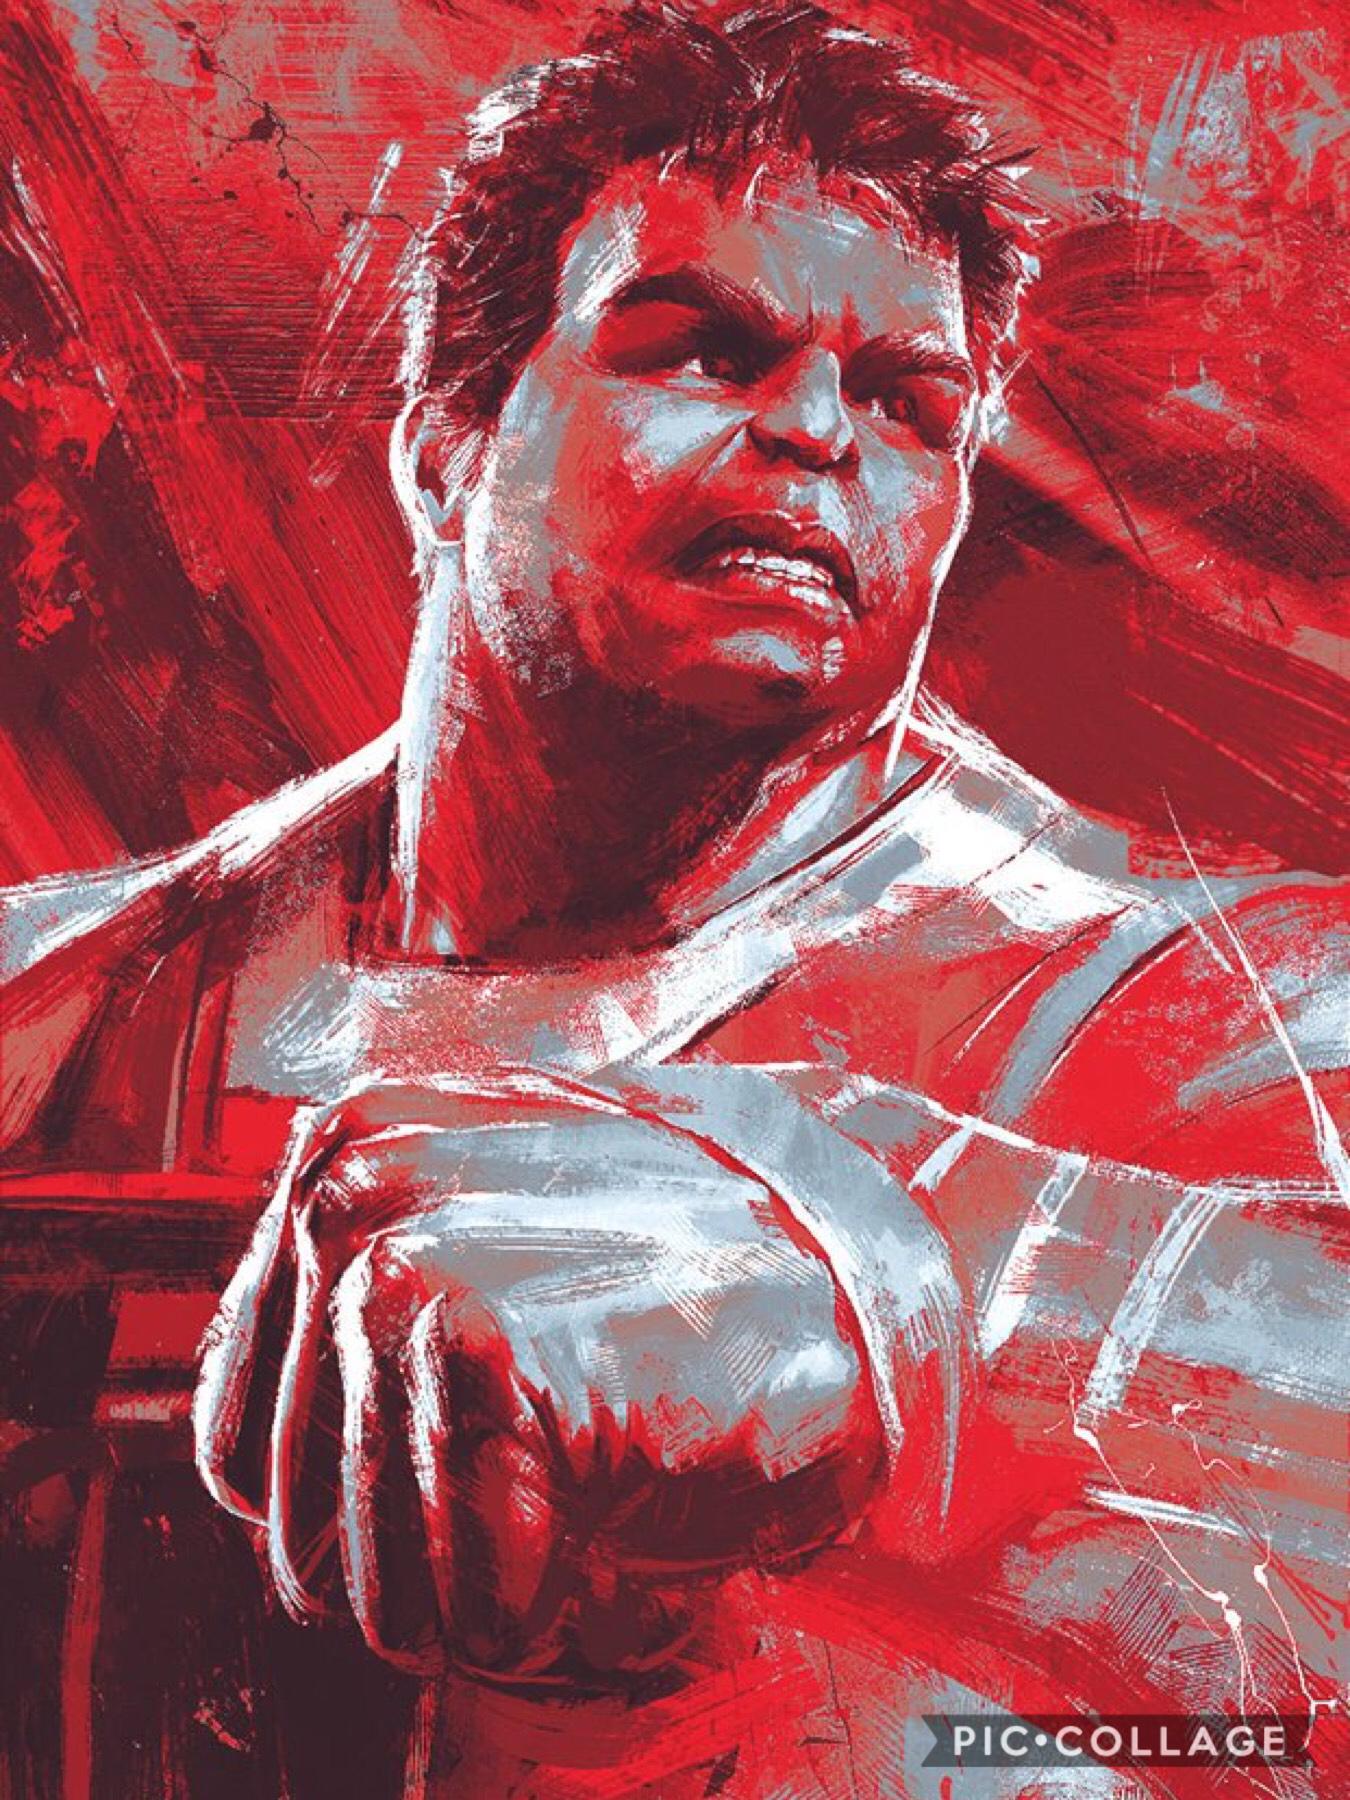 @Avengers #EndGame #Hulk in 2019 by Marvel Studios